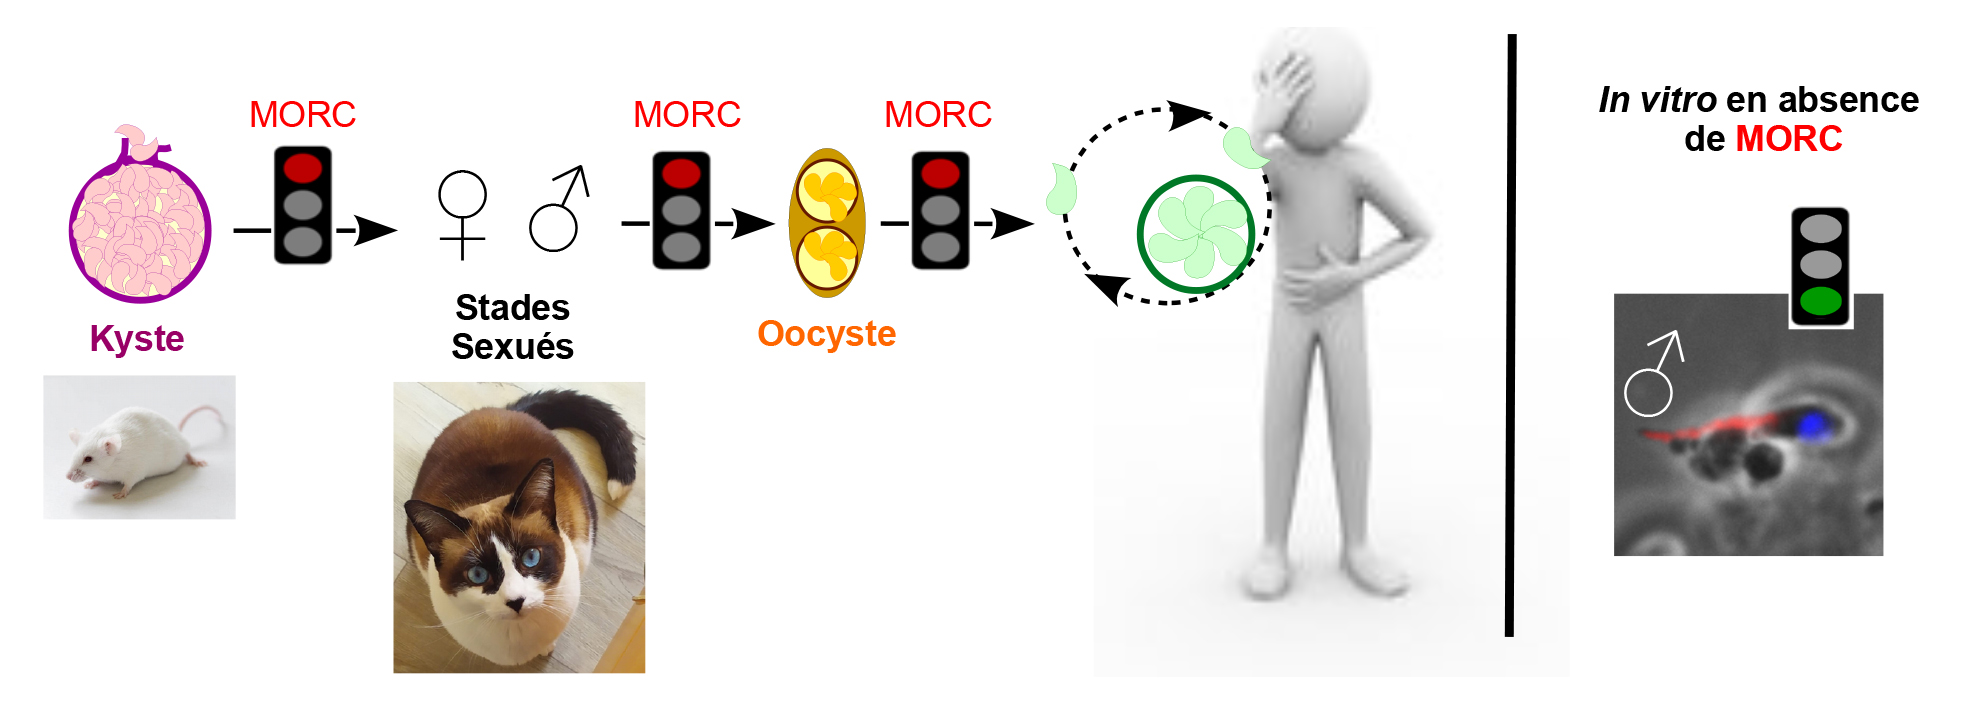 MORC régule le cycle de vie de Toxoplasma, entre Homme et Chat